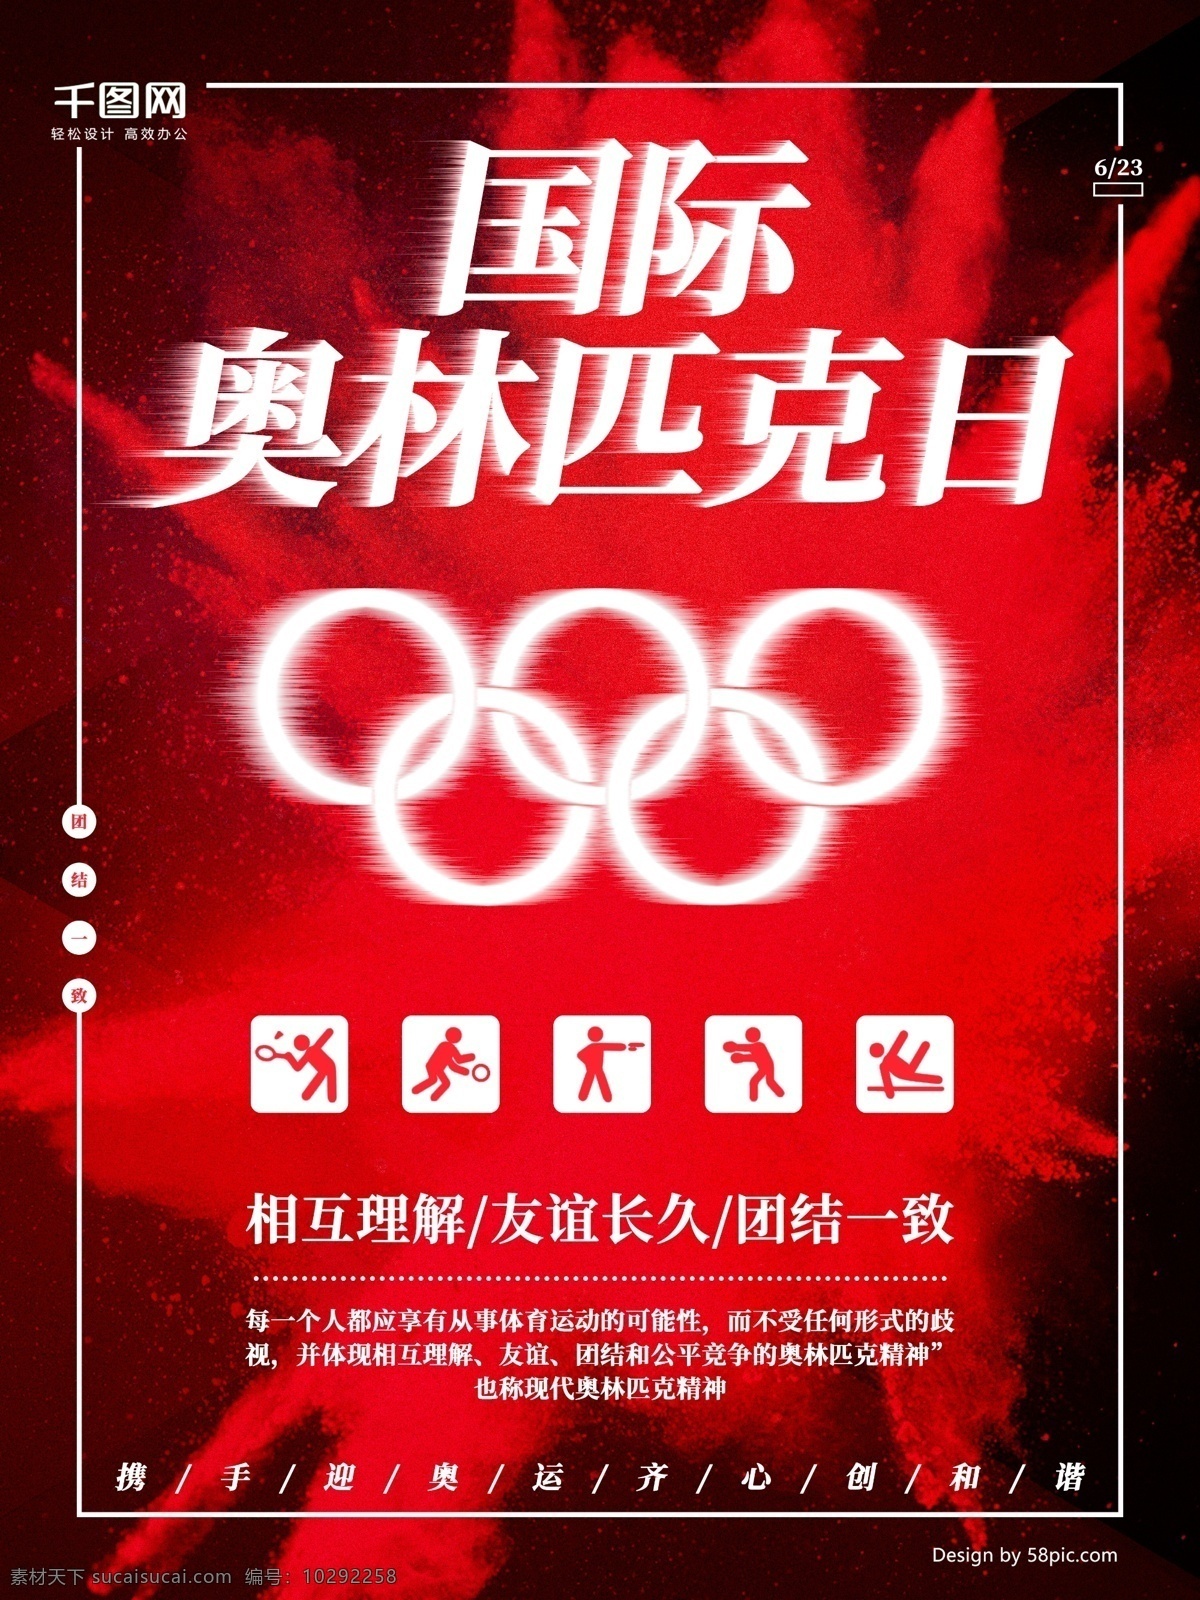 红色 奥林匹克日 海报 奥林匹克 五环 相互理解 大红 国际奥林匹克 喷溅风